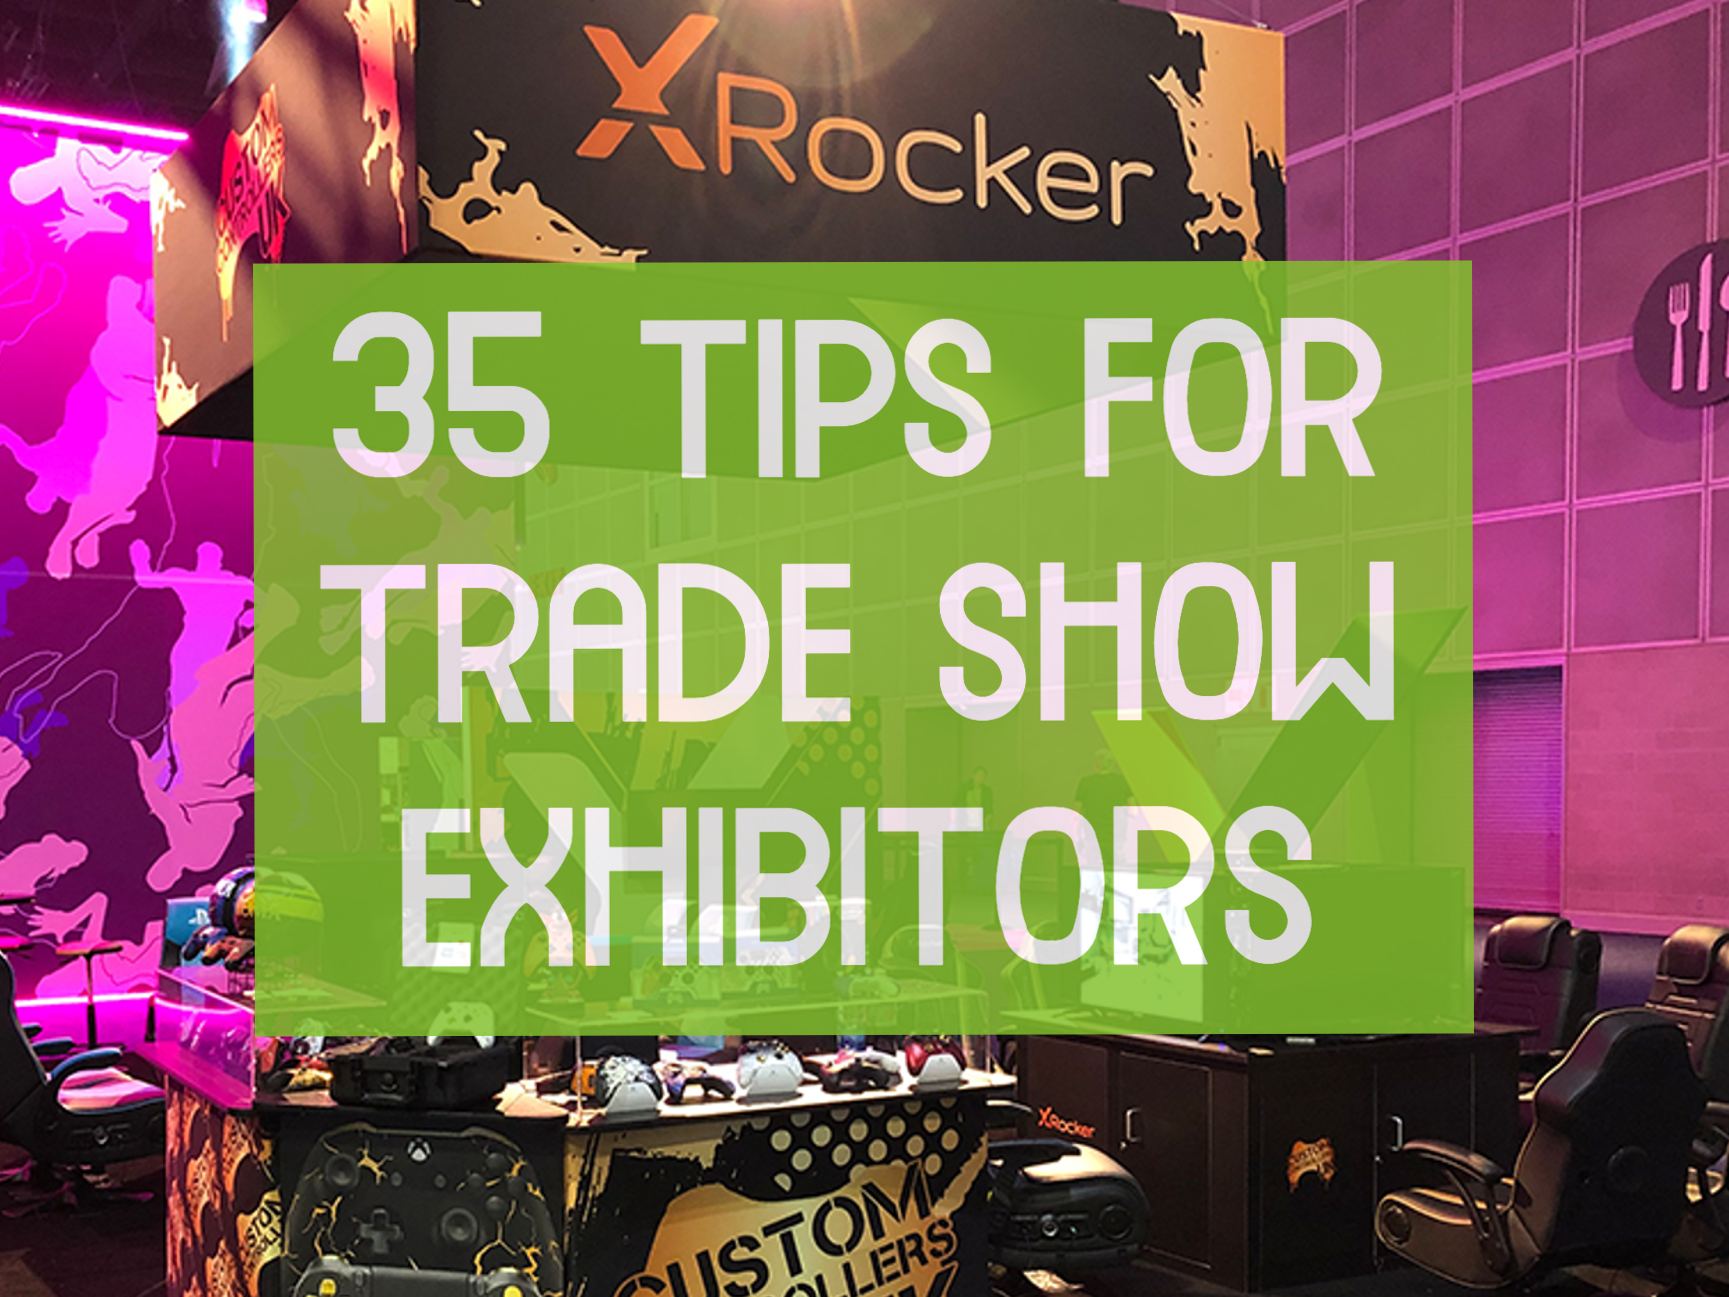 Trade show exhibitor tips